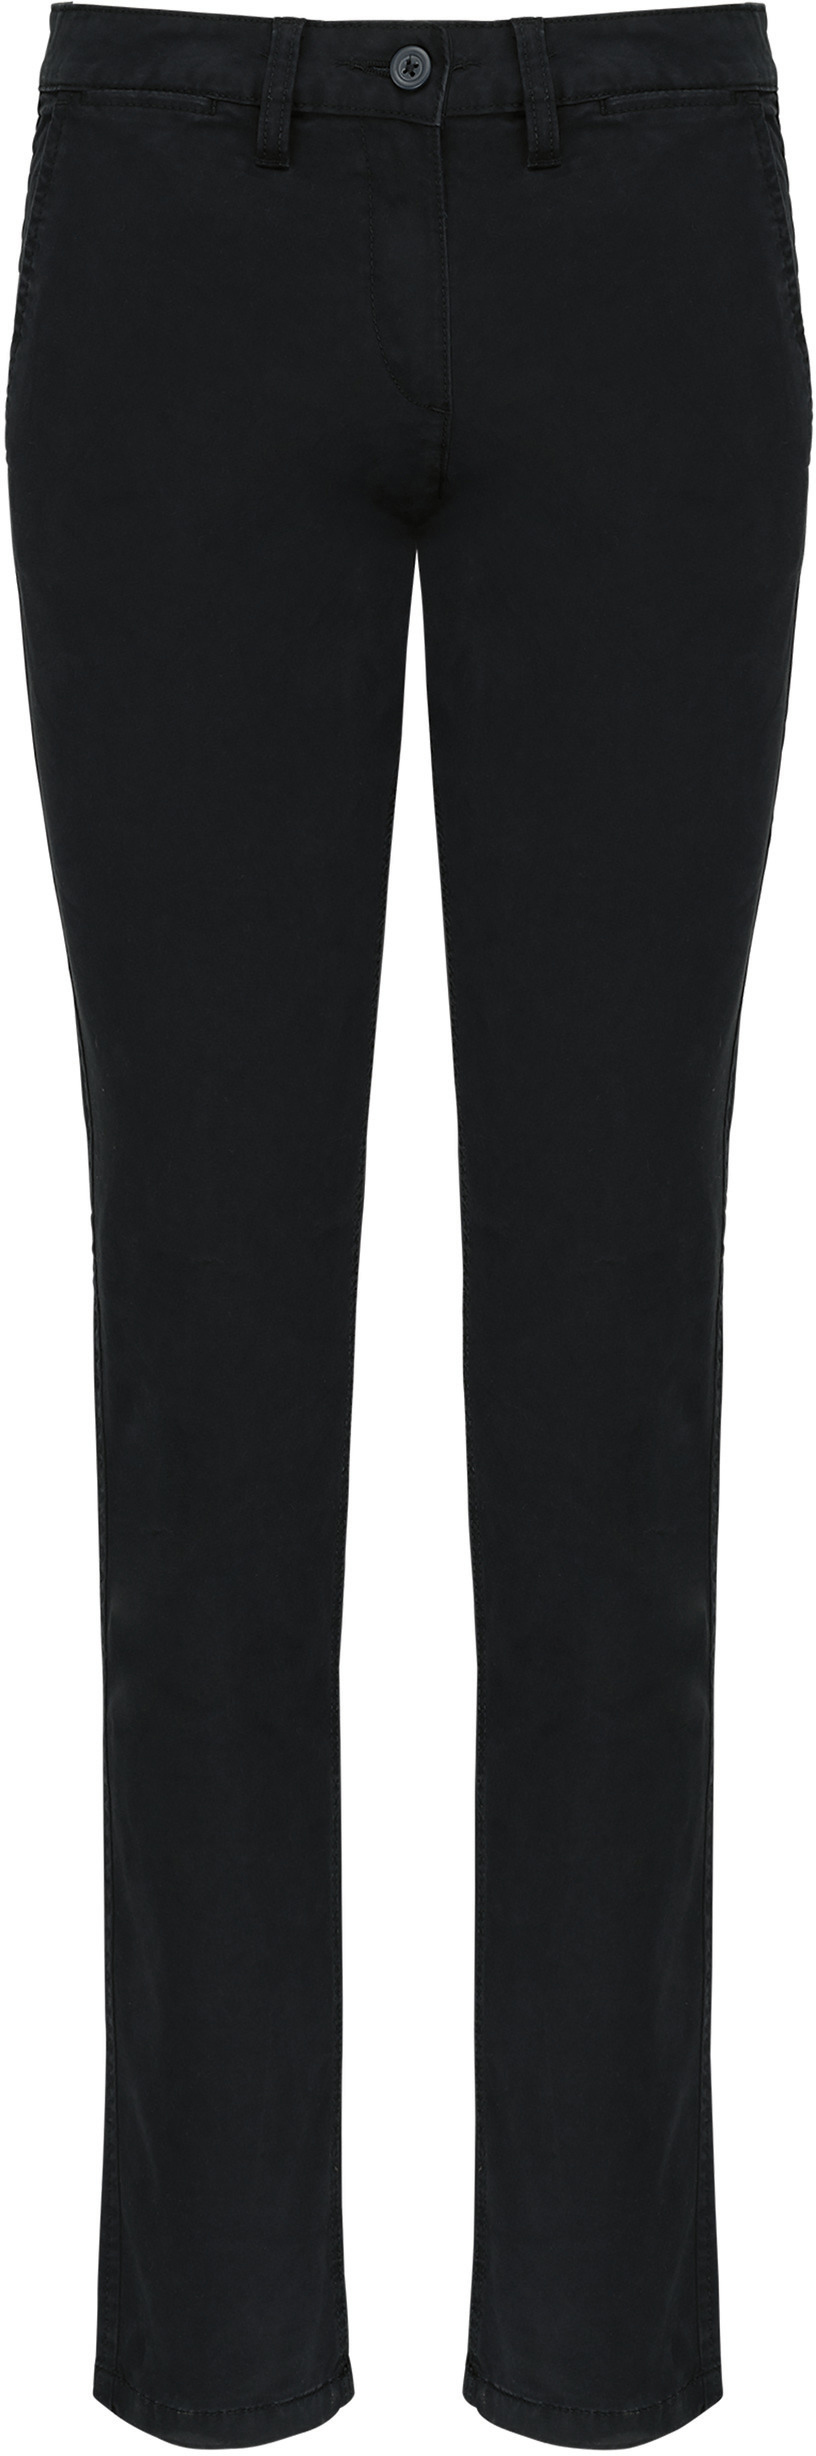 Dámské kalhoty CHINO K741 Barva: černá, Velikost: 42